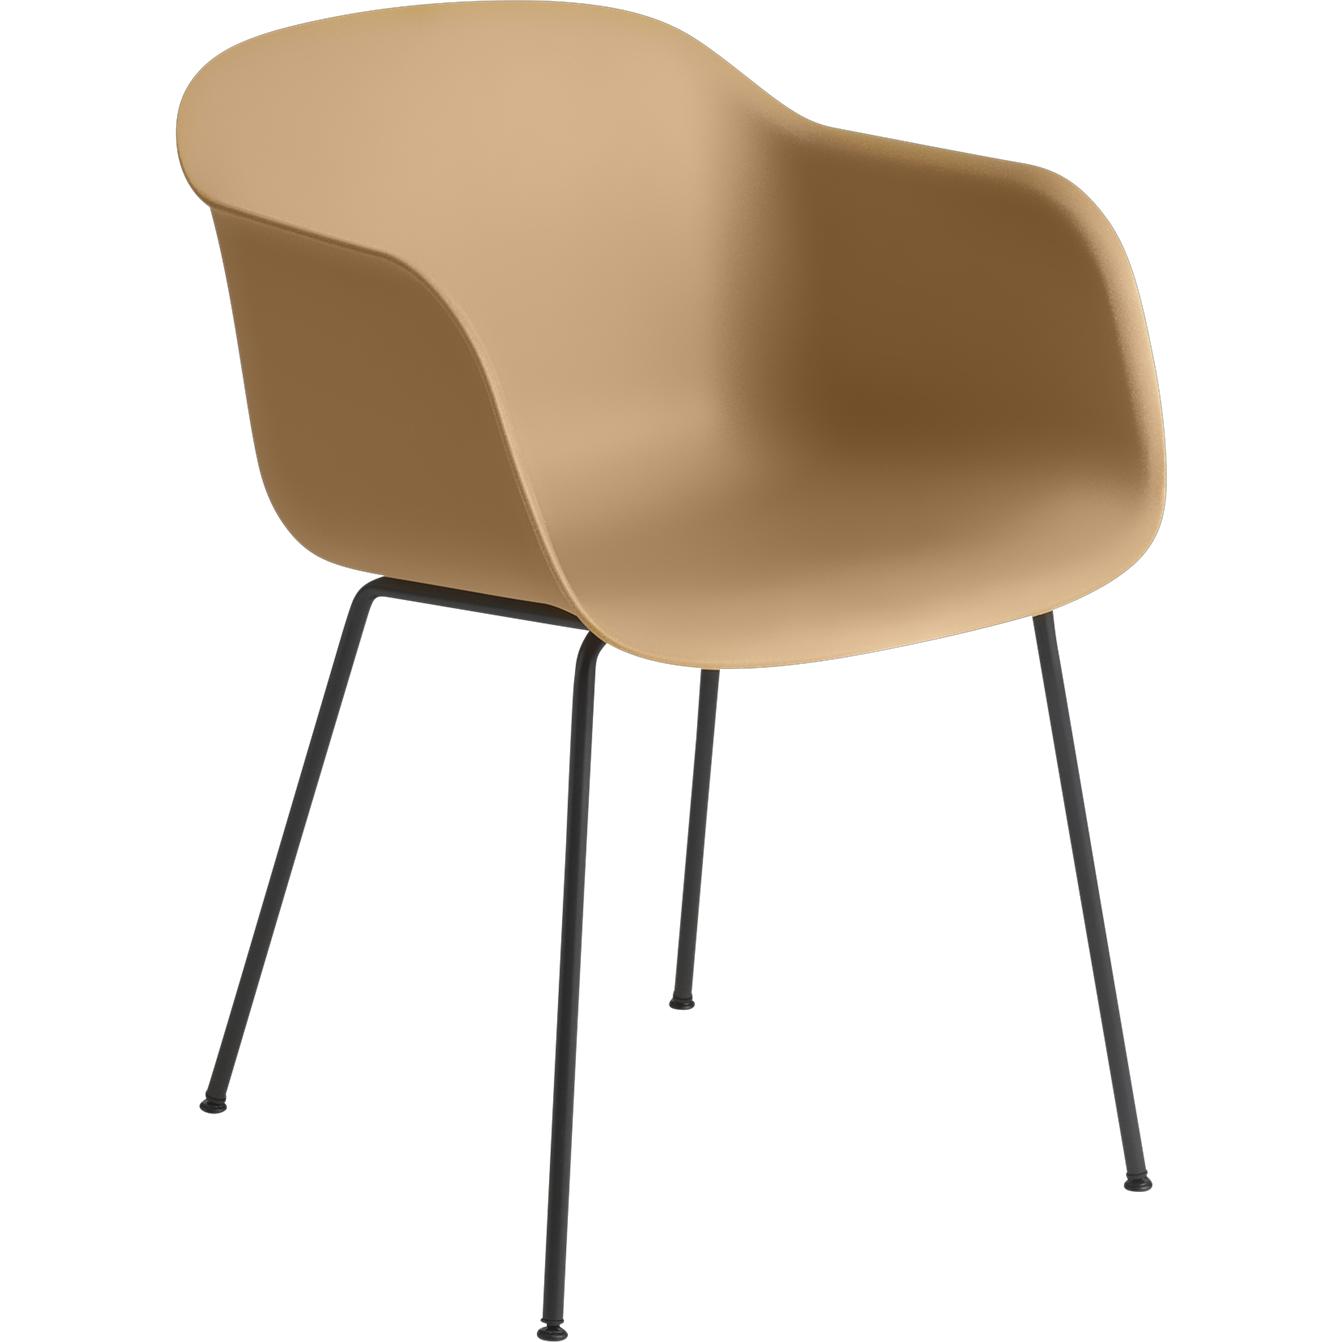 Base de tubo de sillón de fibra muuto, asiento de fibra, marrón/negro